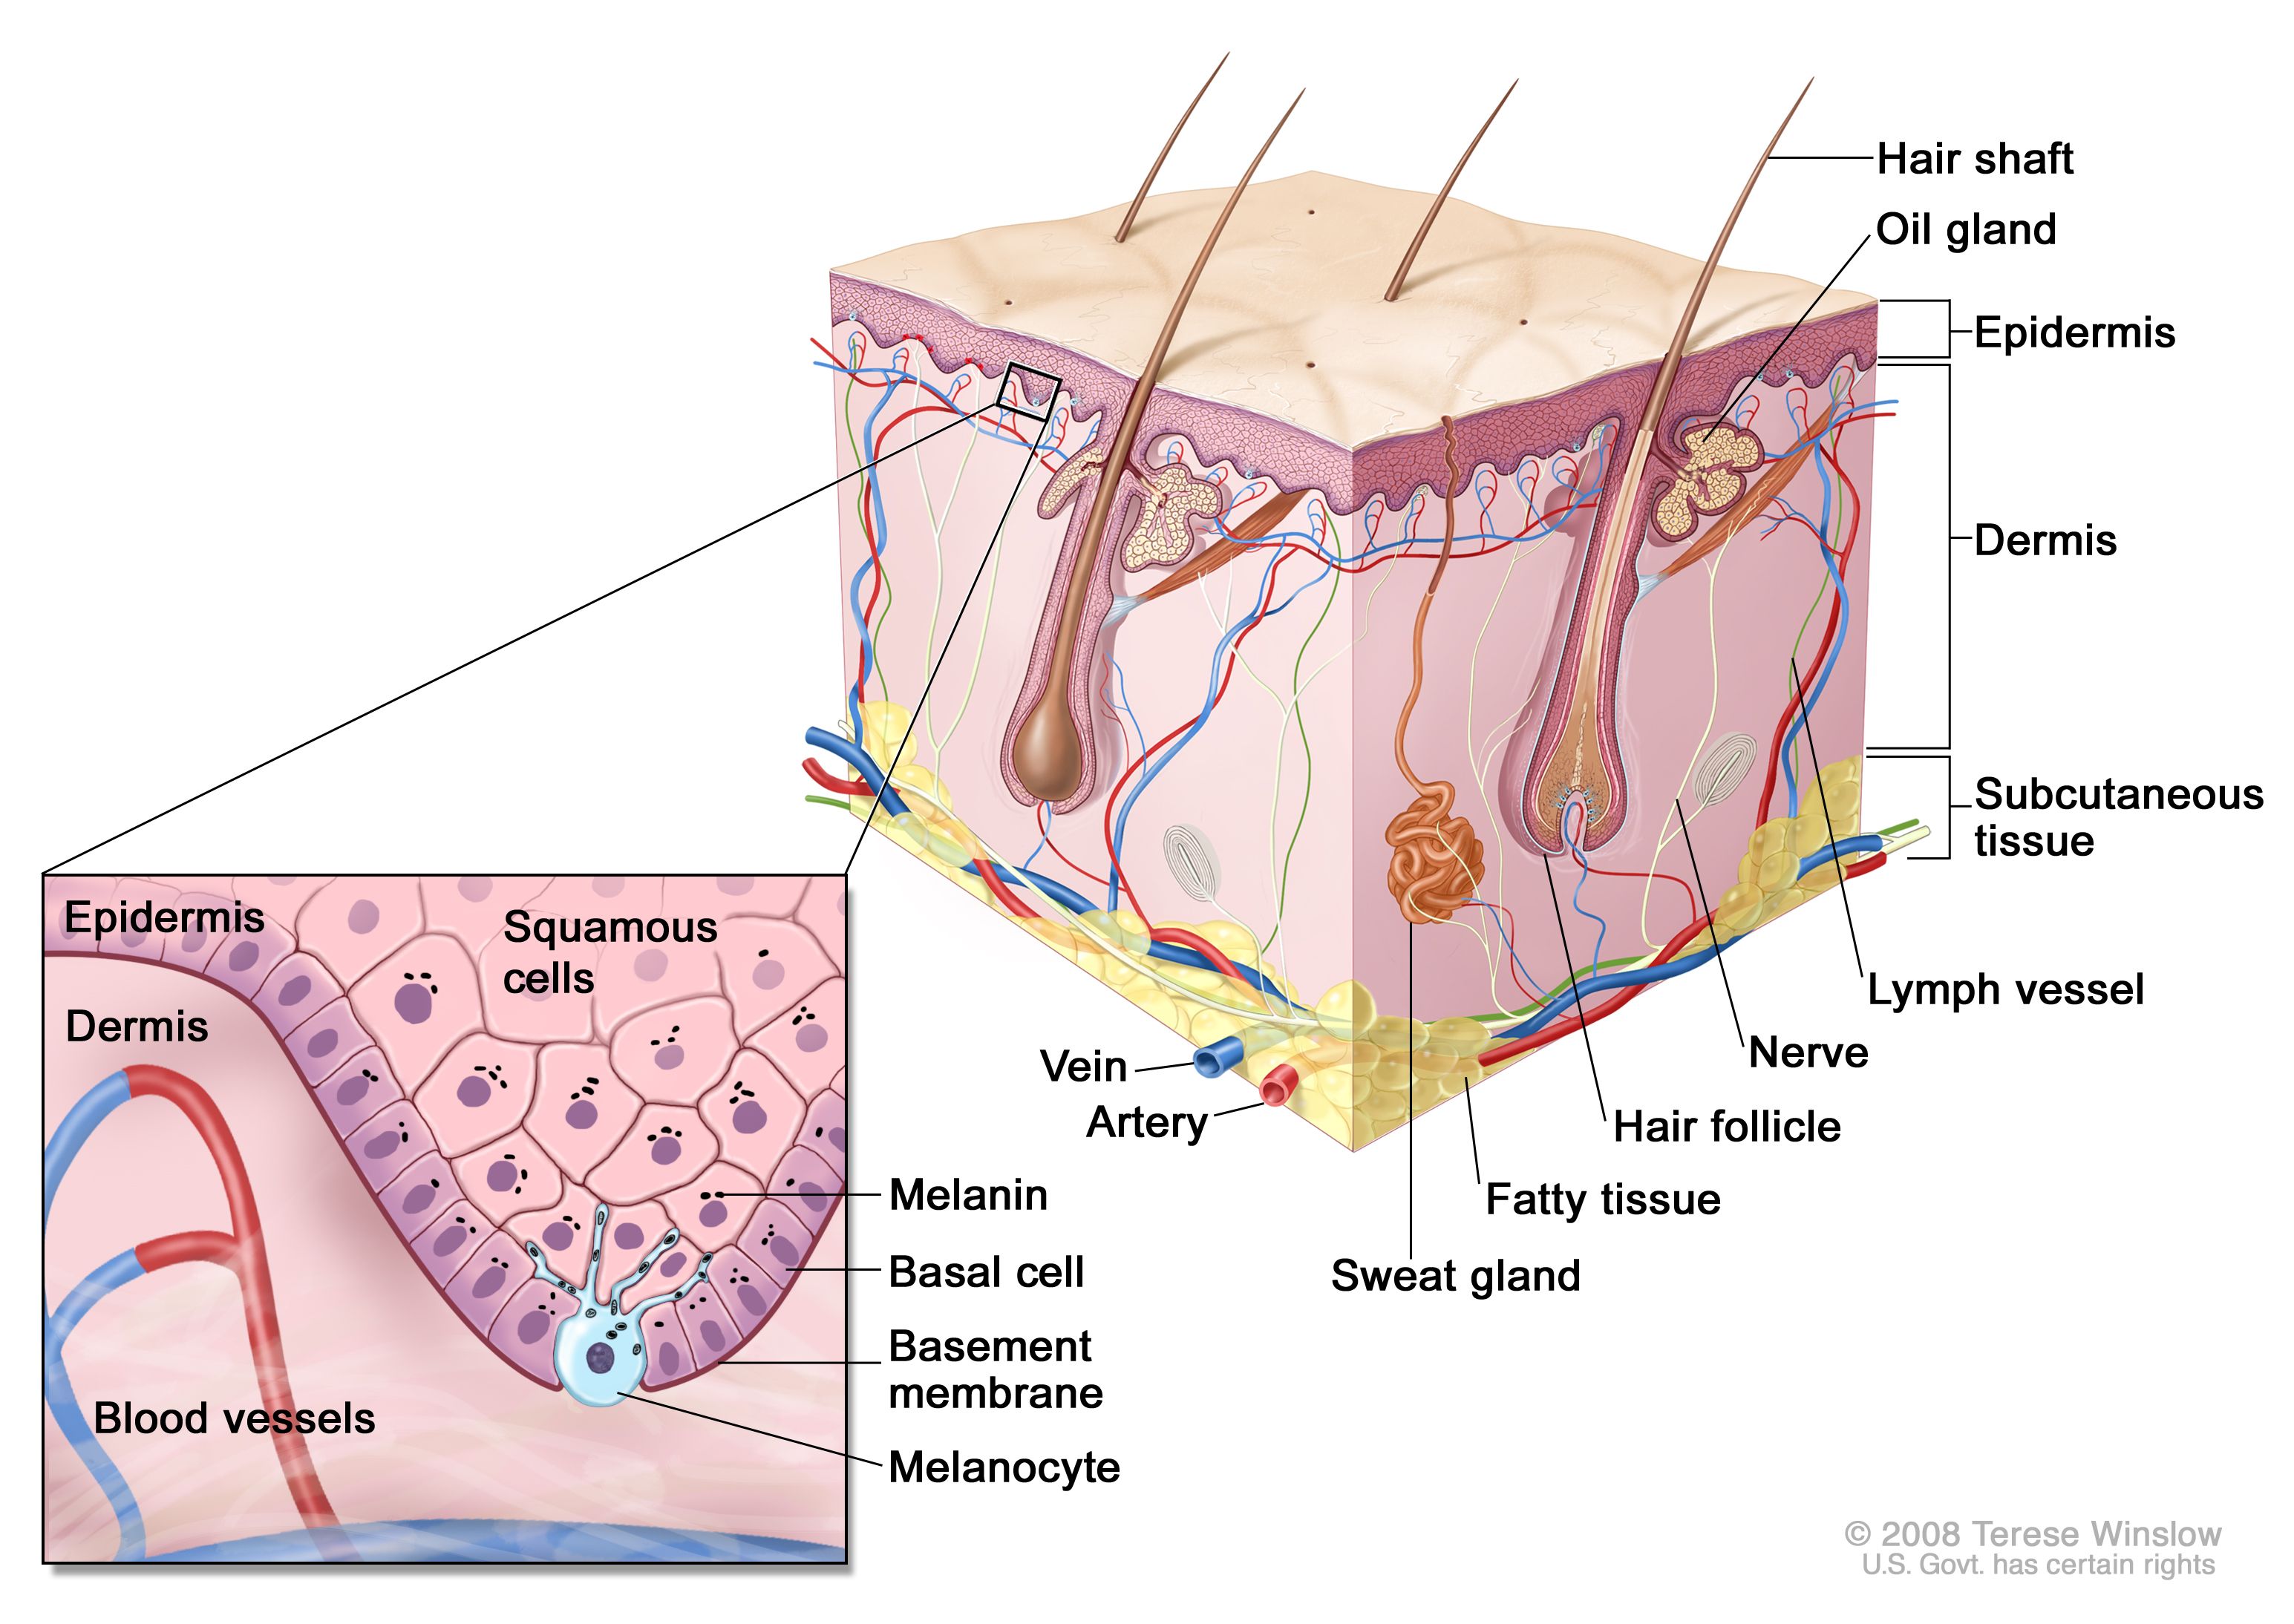 正常皮膚の略図；表皮、真皮、毛包、汗腺、毛幹、静脈、動脈、脂肪組織、神経、リンパ管、脂腺、皮下組織などの正常皮膚の解剖学的構造を示す。拡大図では、表皮の扁平上皮細胞および基底細胞層、表皮と真皮の間の基底膜、および真皮を血管とともに詳細に示している。細胞の内部にメラニンが示されている。メラノサイトは、表皮の最深部に位置する基底細胞層にある。